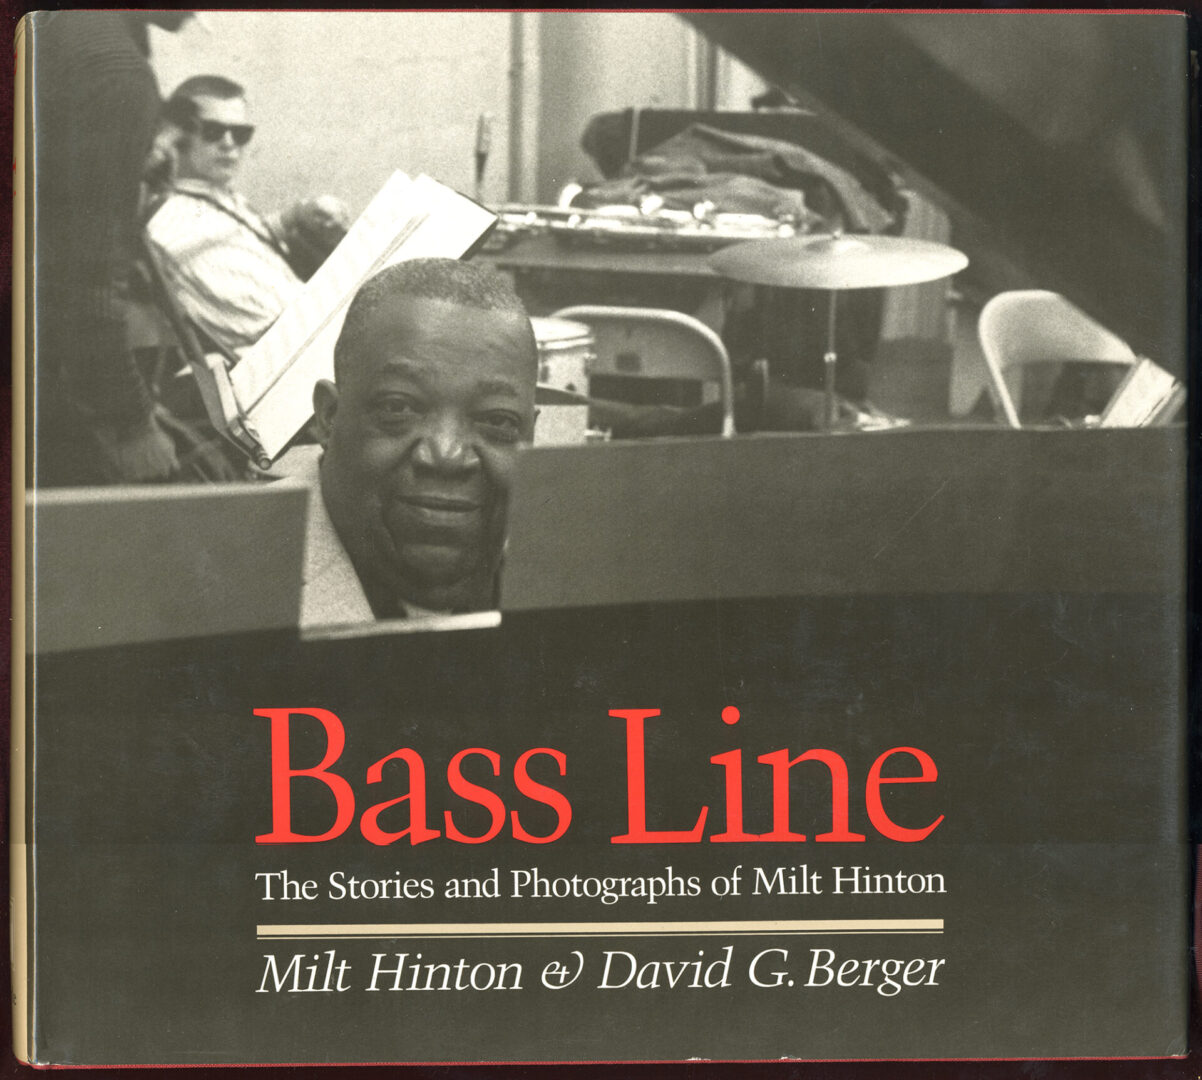 Bass Line BOOK_JACKET